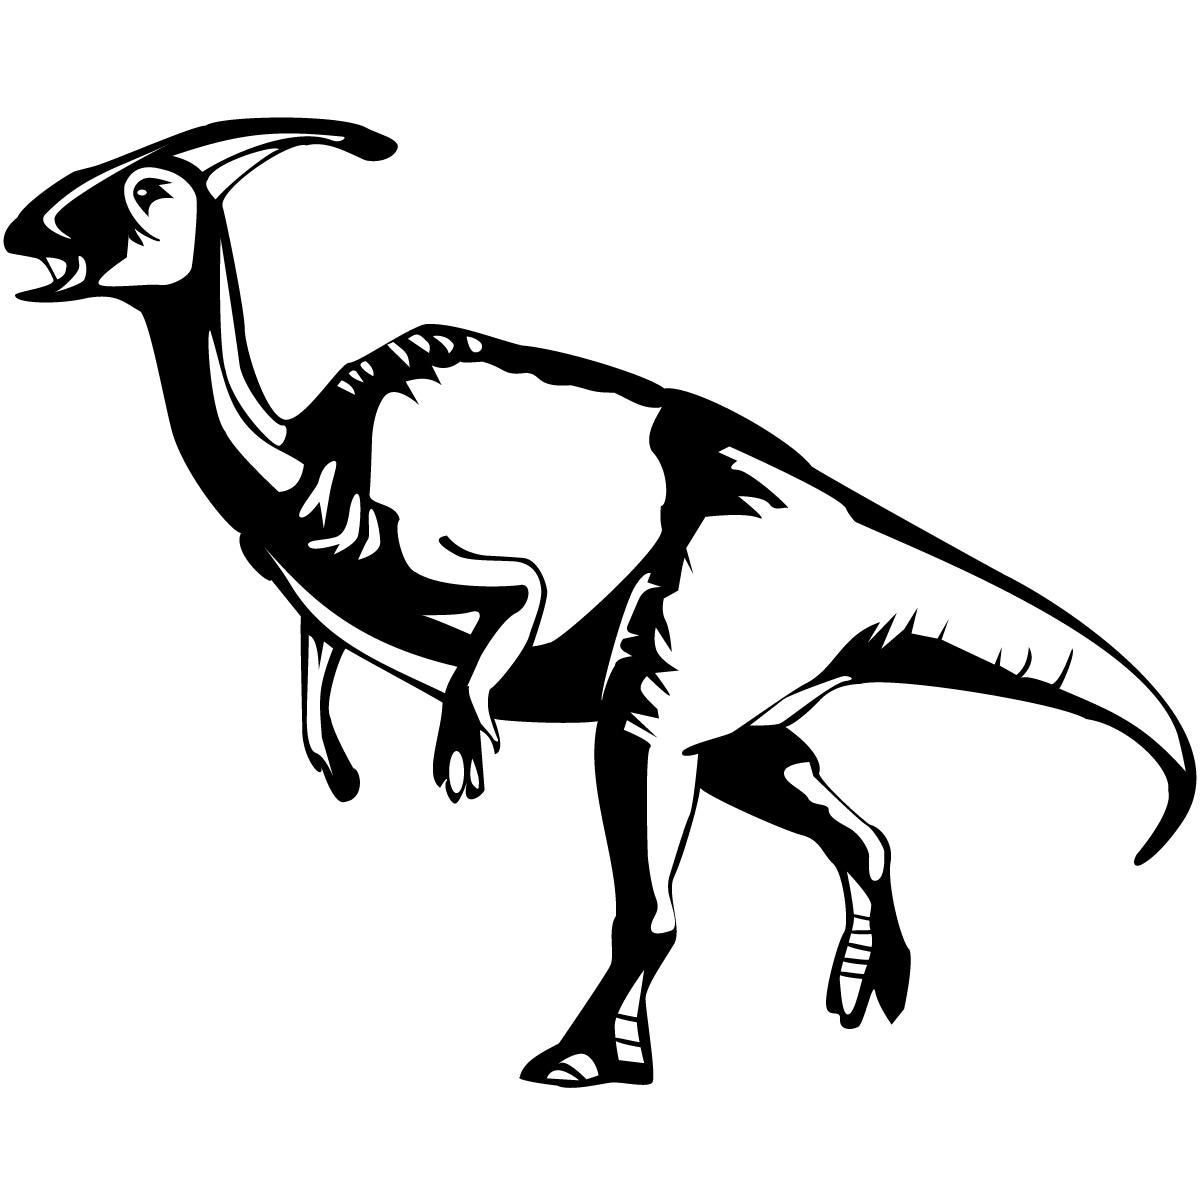 Single horned dinosaur